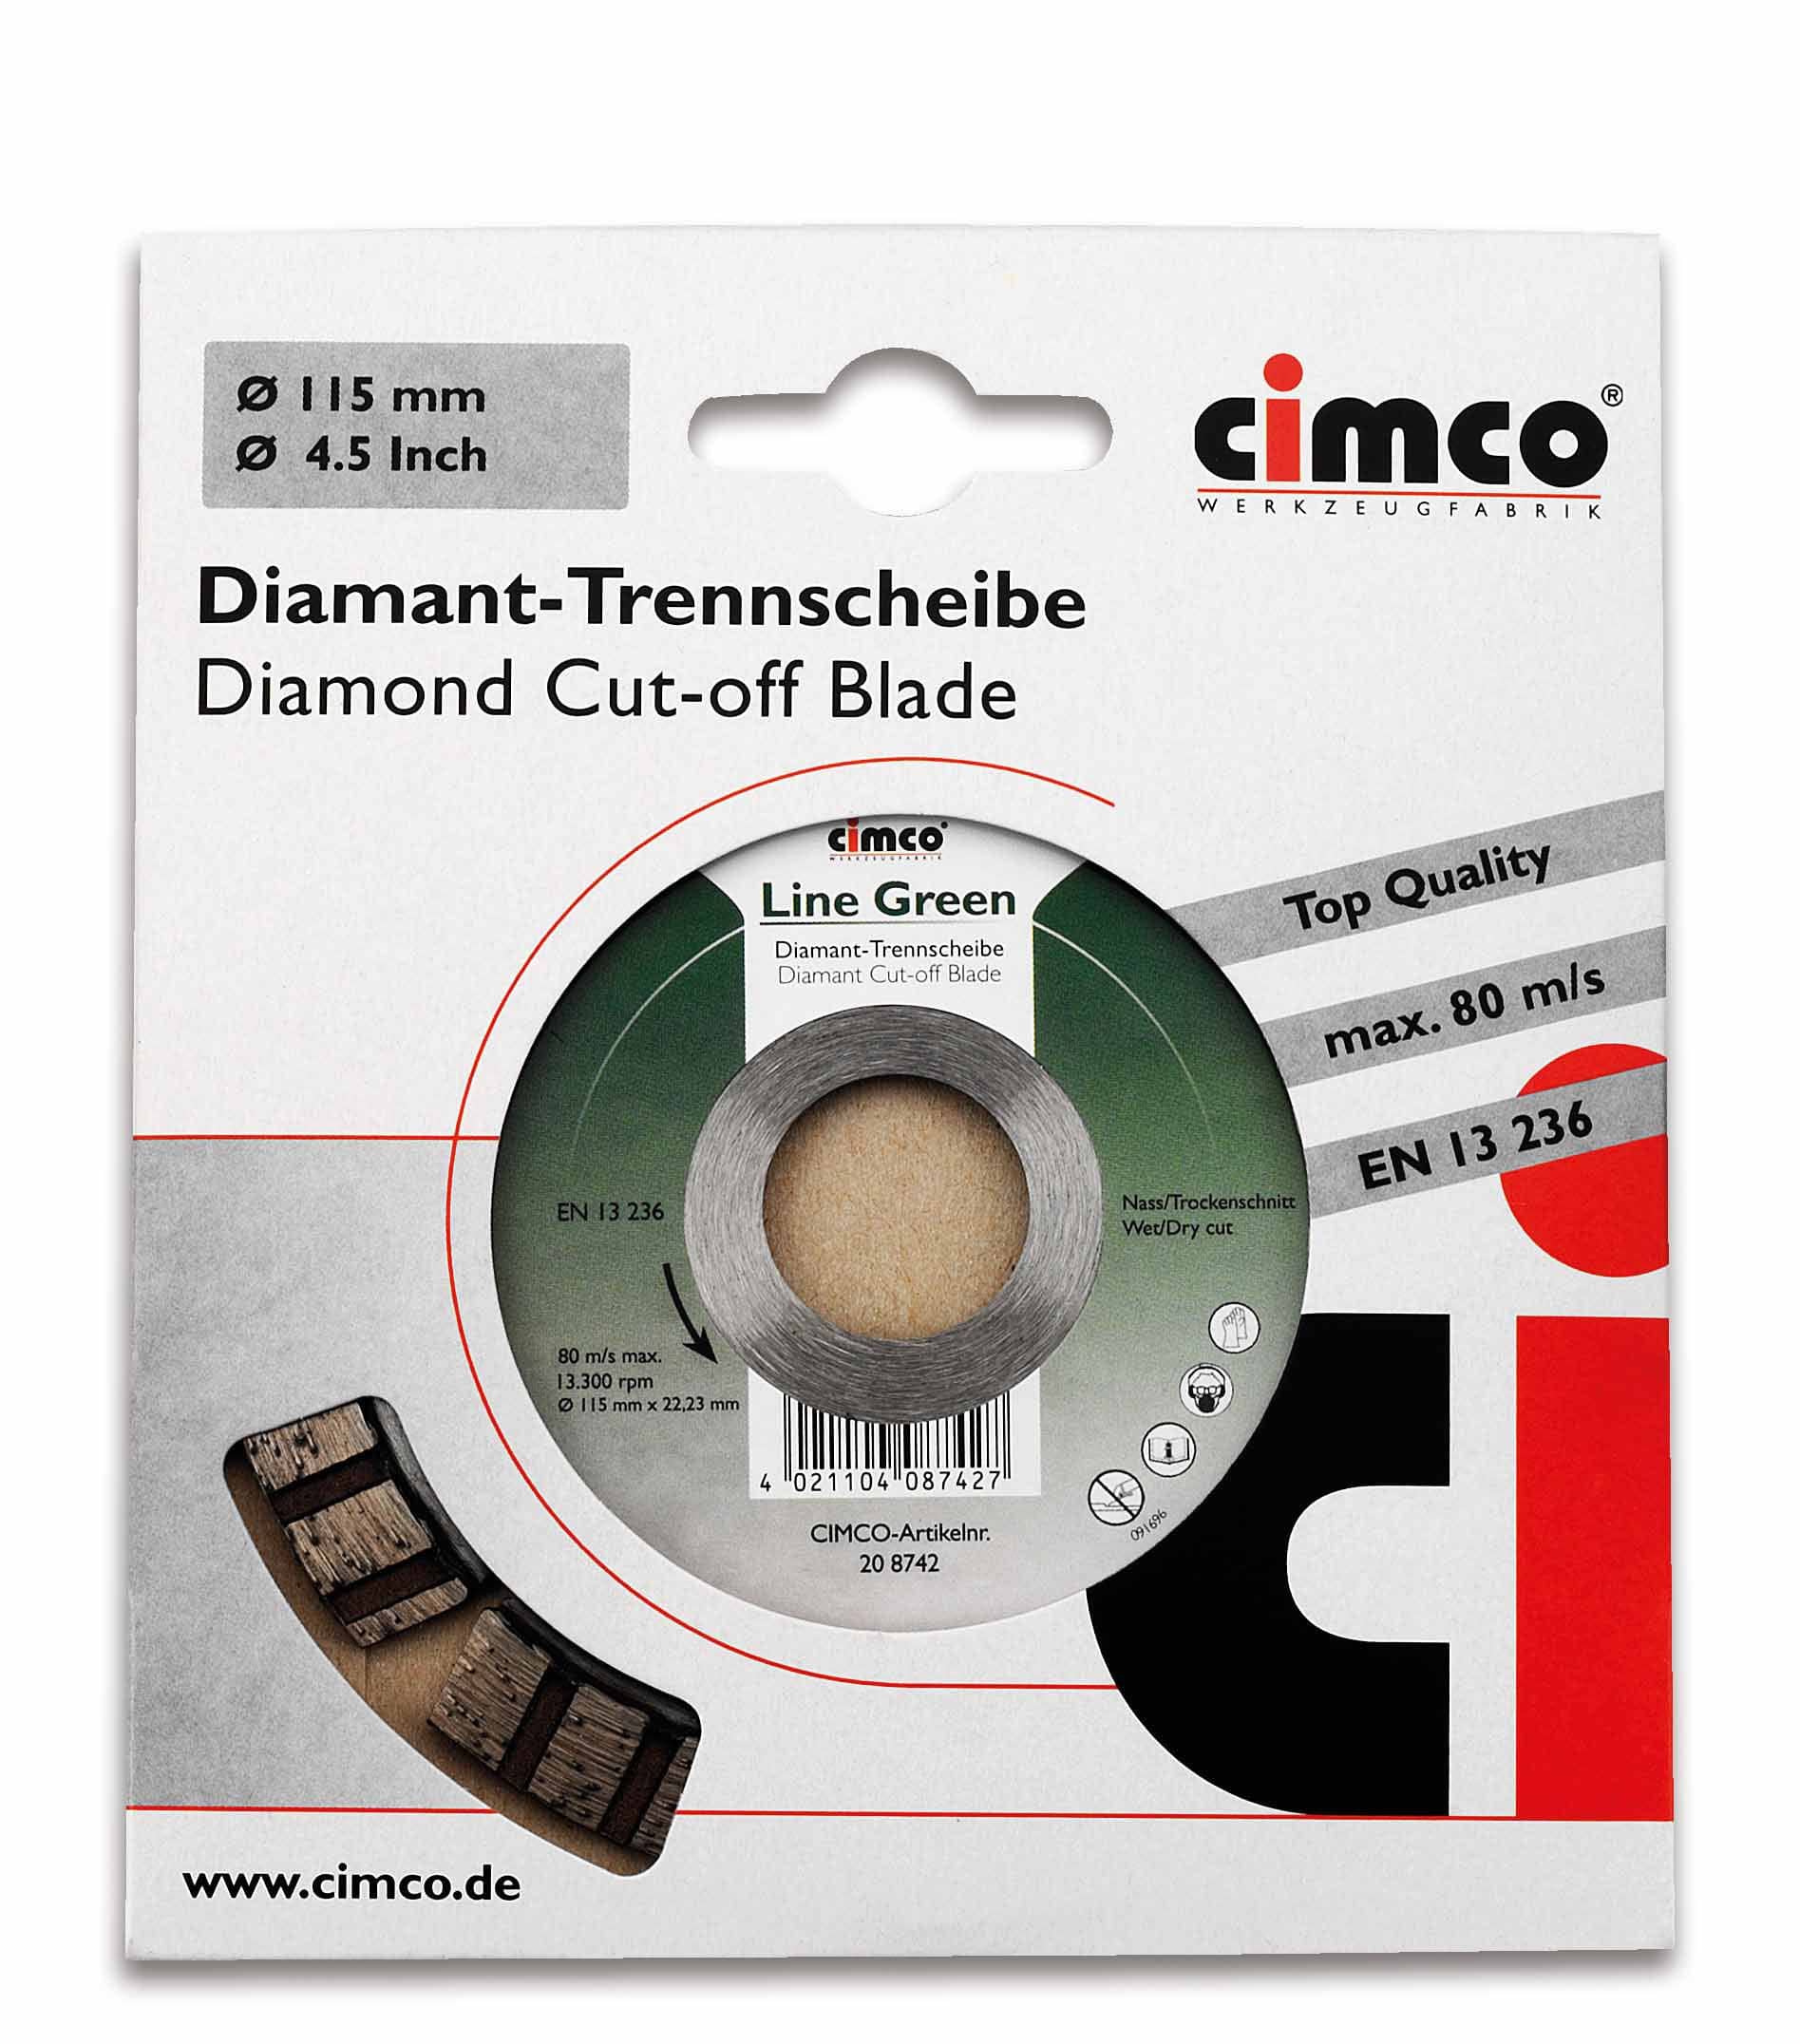 Cimco 20 8742 Diamant-Trennscheibe Line Green, für Basalt und Bordstein, Scheiben-Ø 115 mm